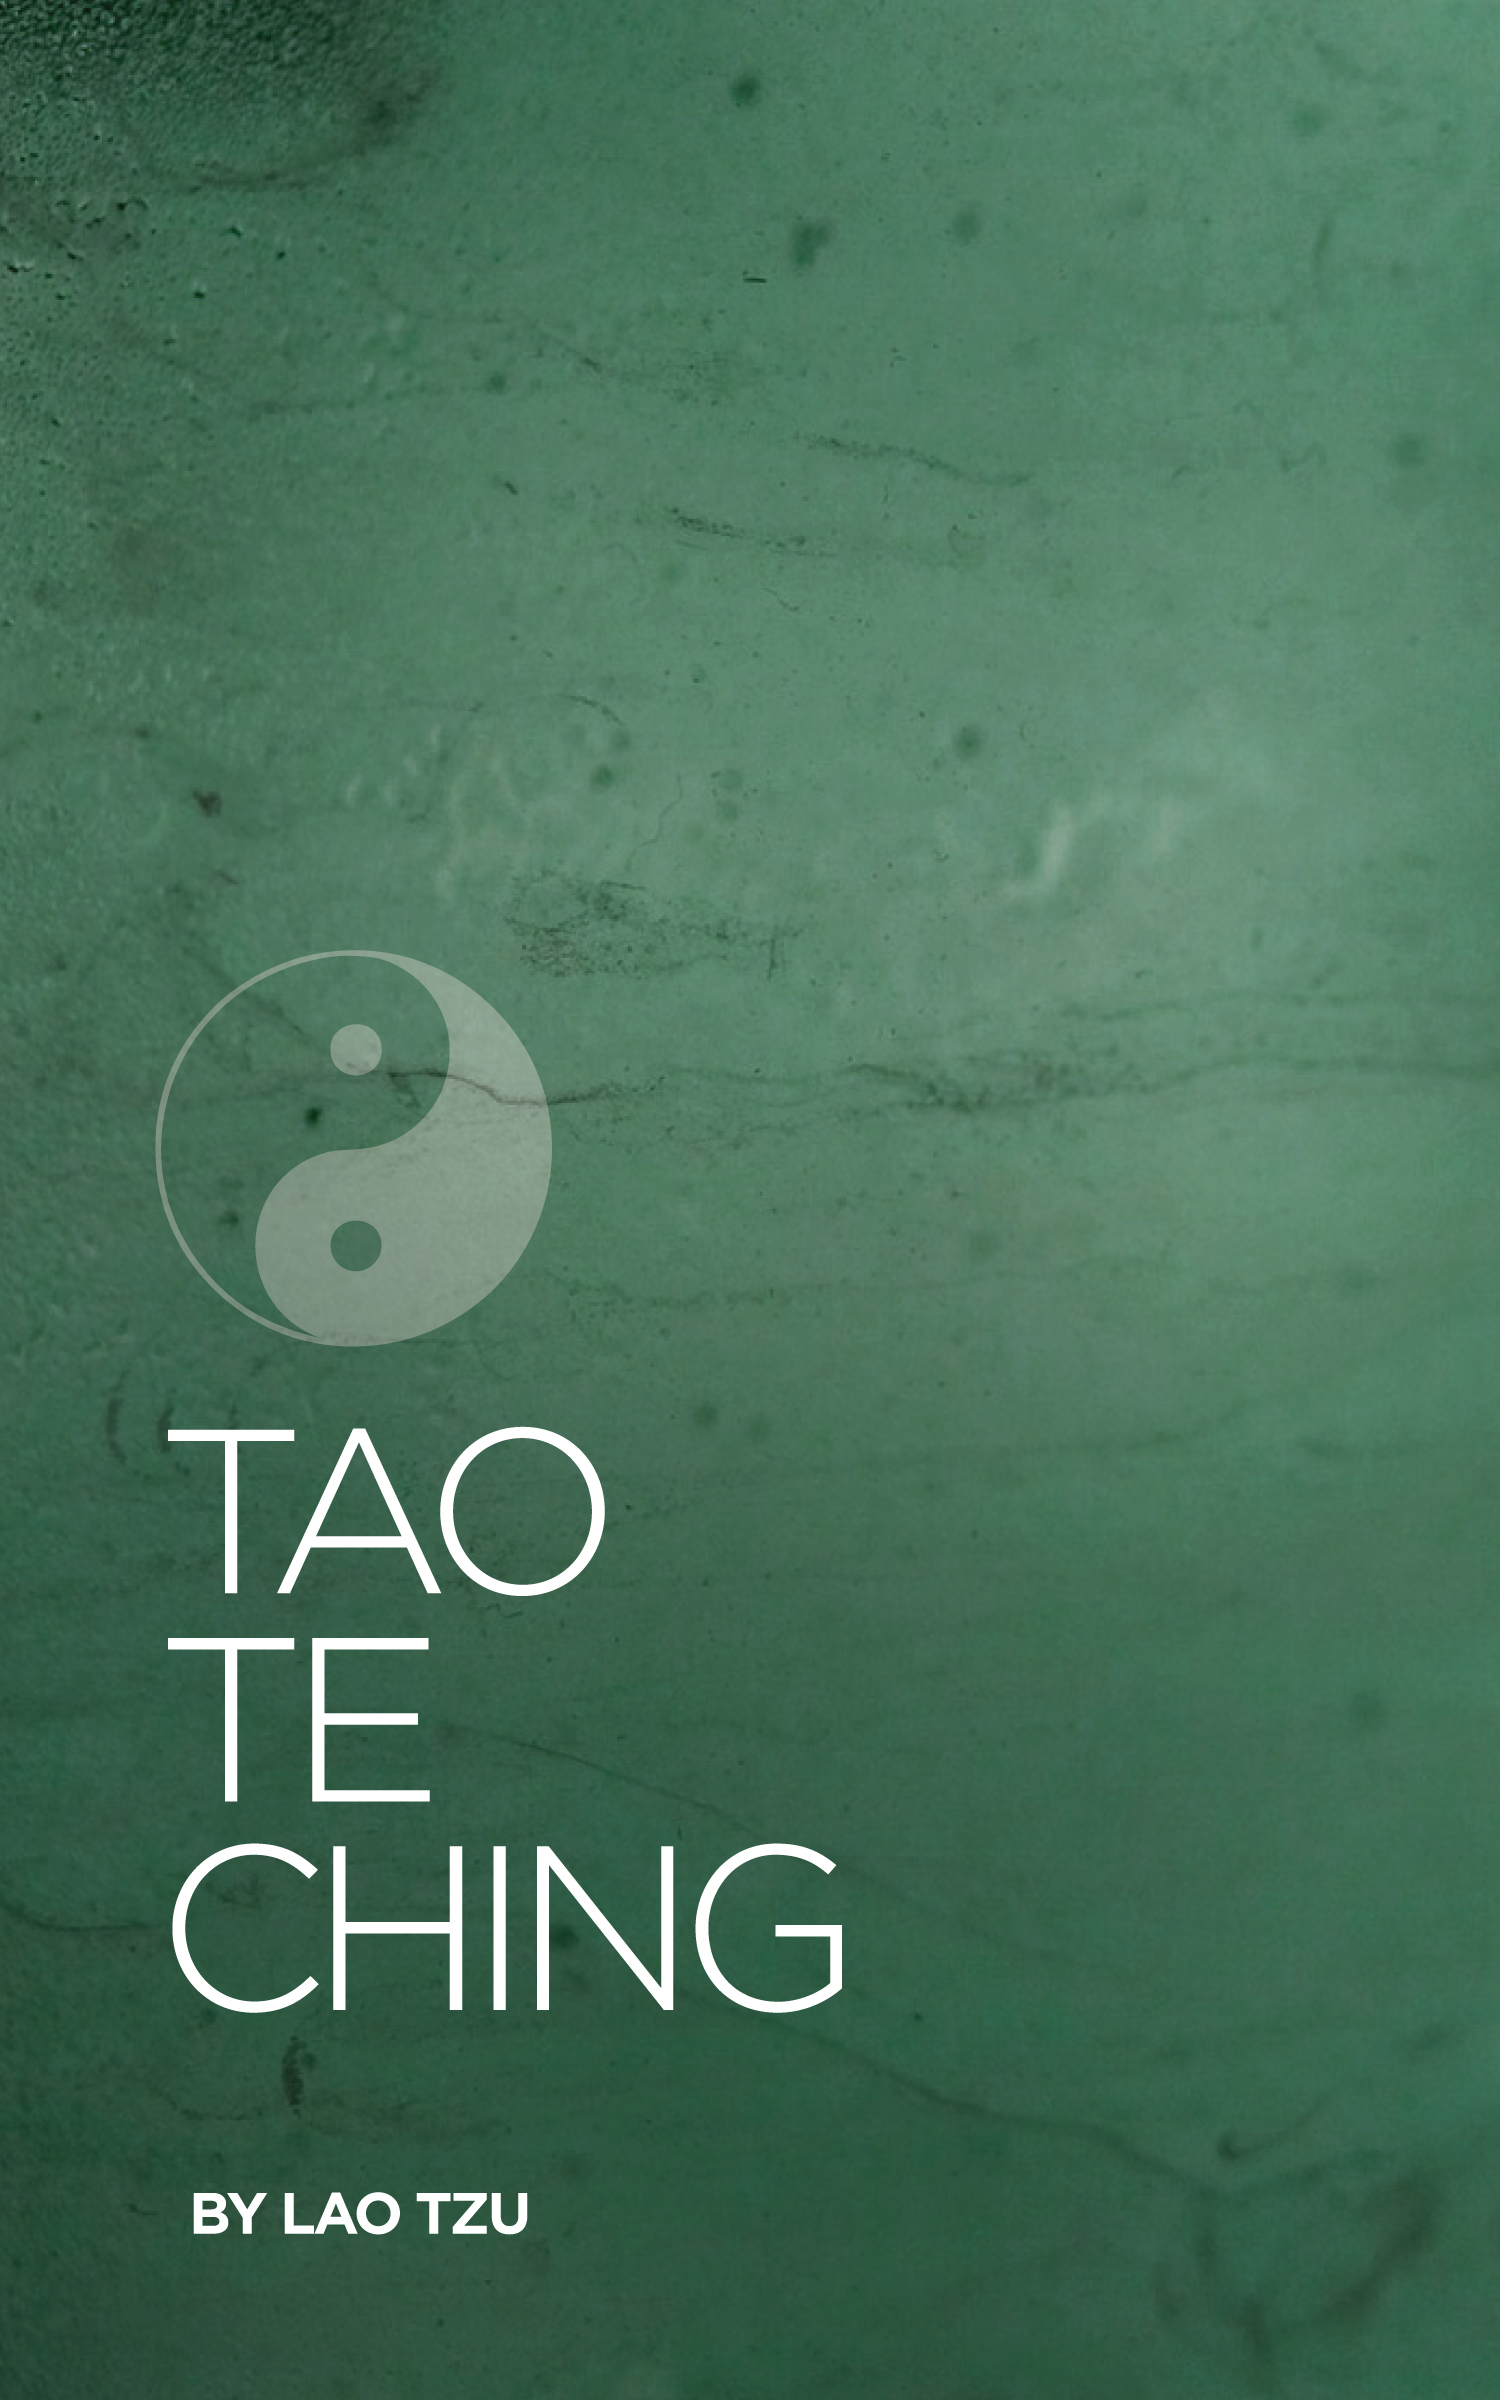 Tao Te Ching by Lao Tzu | Seedbox Press | Seedbox Press